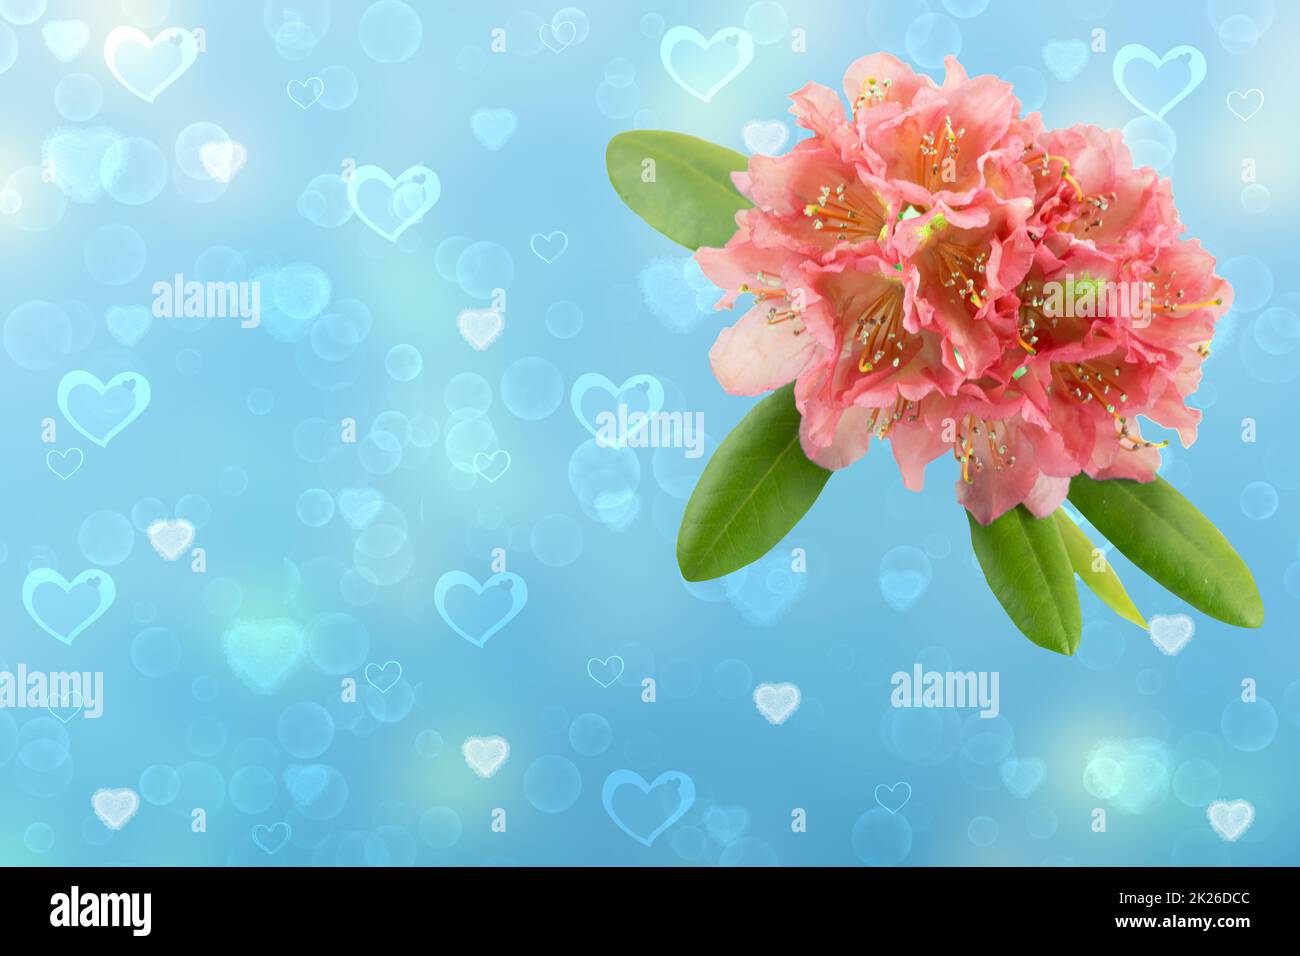 Modèle de carte de Saint-Valentin ou de fête des mères. 3D illustration d'une fleur rose clair rhododendron, azalée sur fond bleu abstrait avec coeurs. Espace pour la conception de texte. Banque D'Images